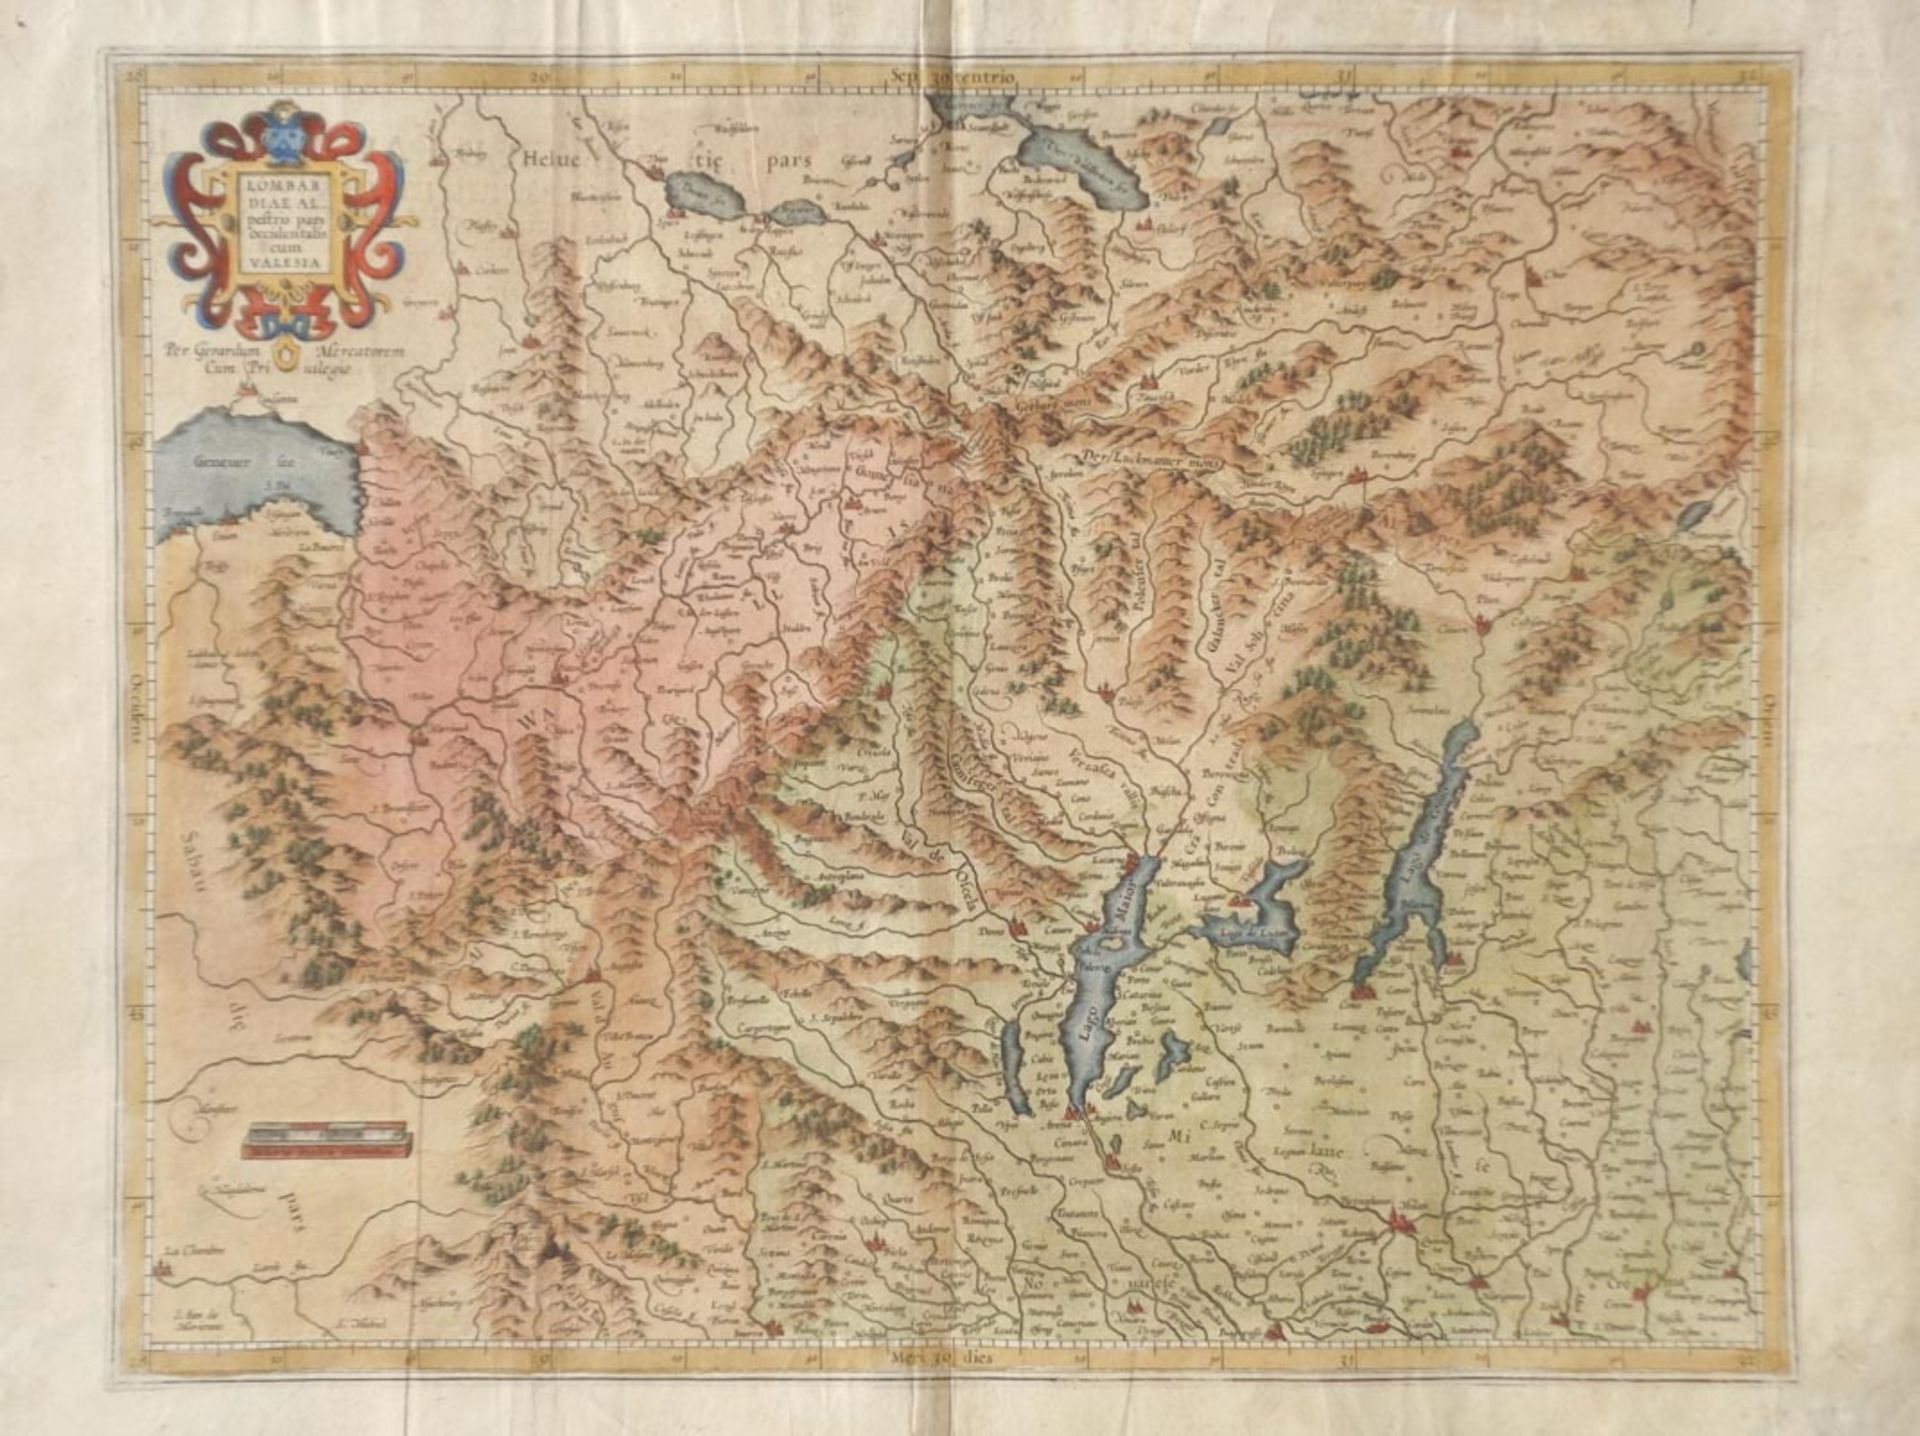 Gerard Mercator - Lombardiae Alpetris Pars Occidentalis cum Valesia, ca. 1613/16